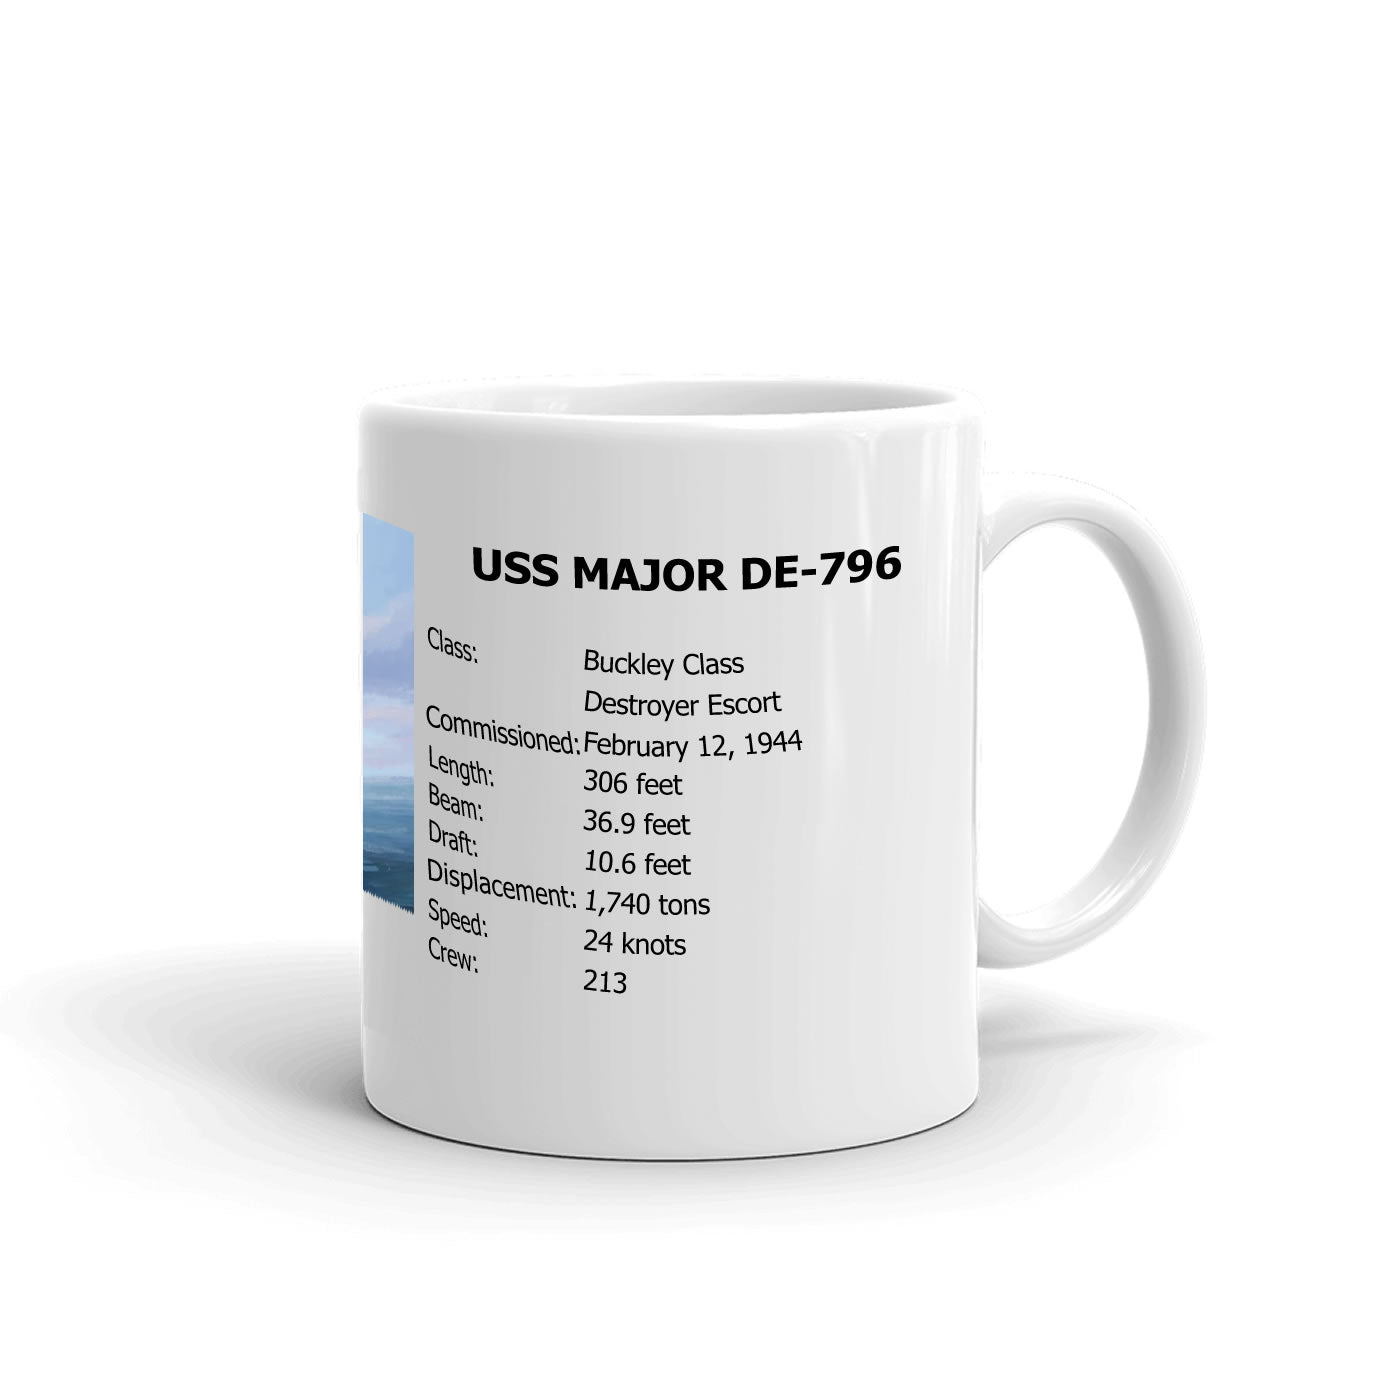 USS Major DE-796 Coffee Cup Mug Right Handle